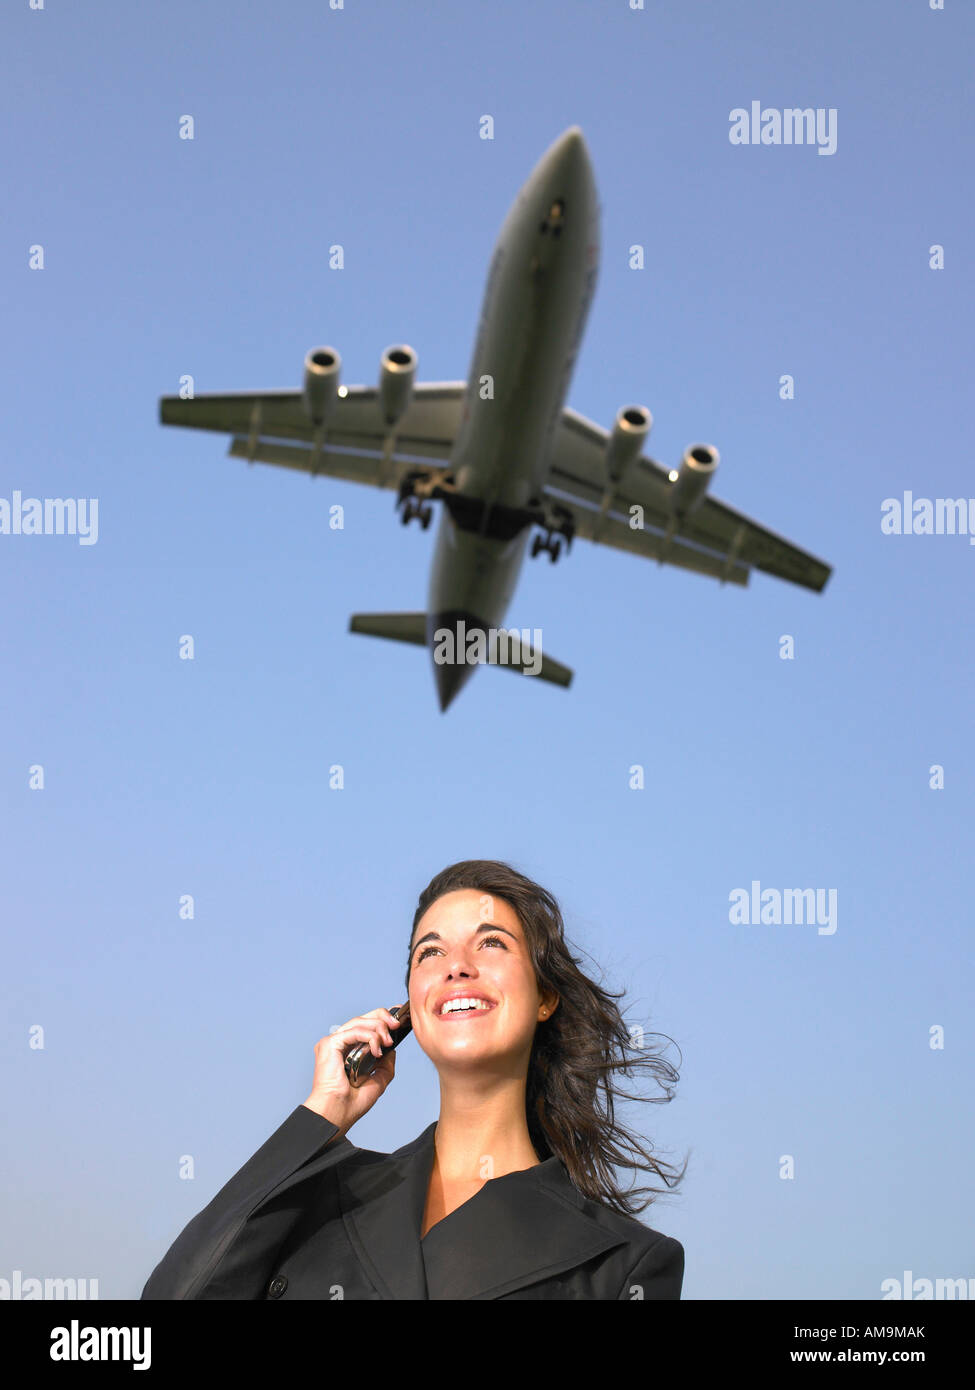 Femme sur téléphone cellulaire smiling avec avion volant au-dessus. Banque D'Images